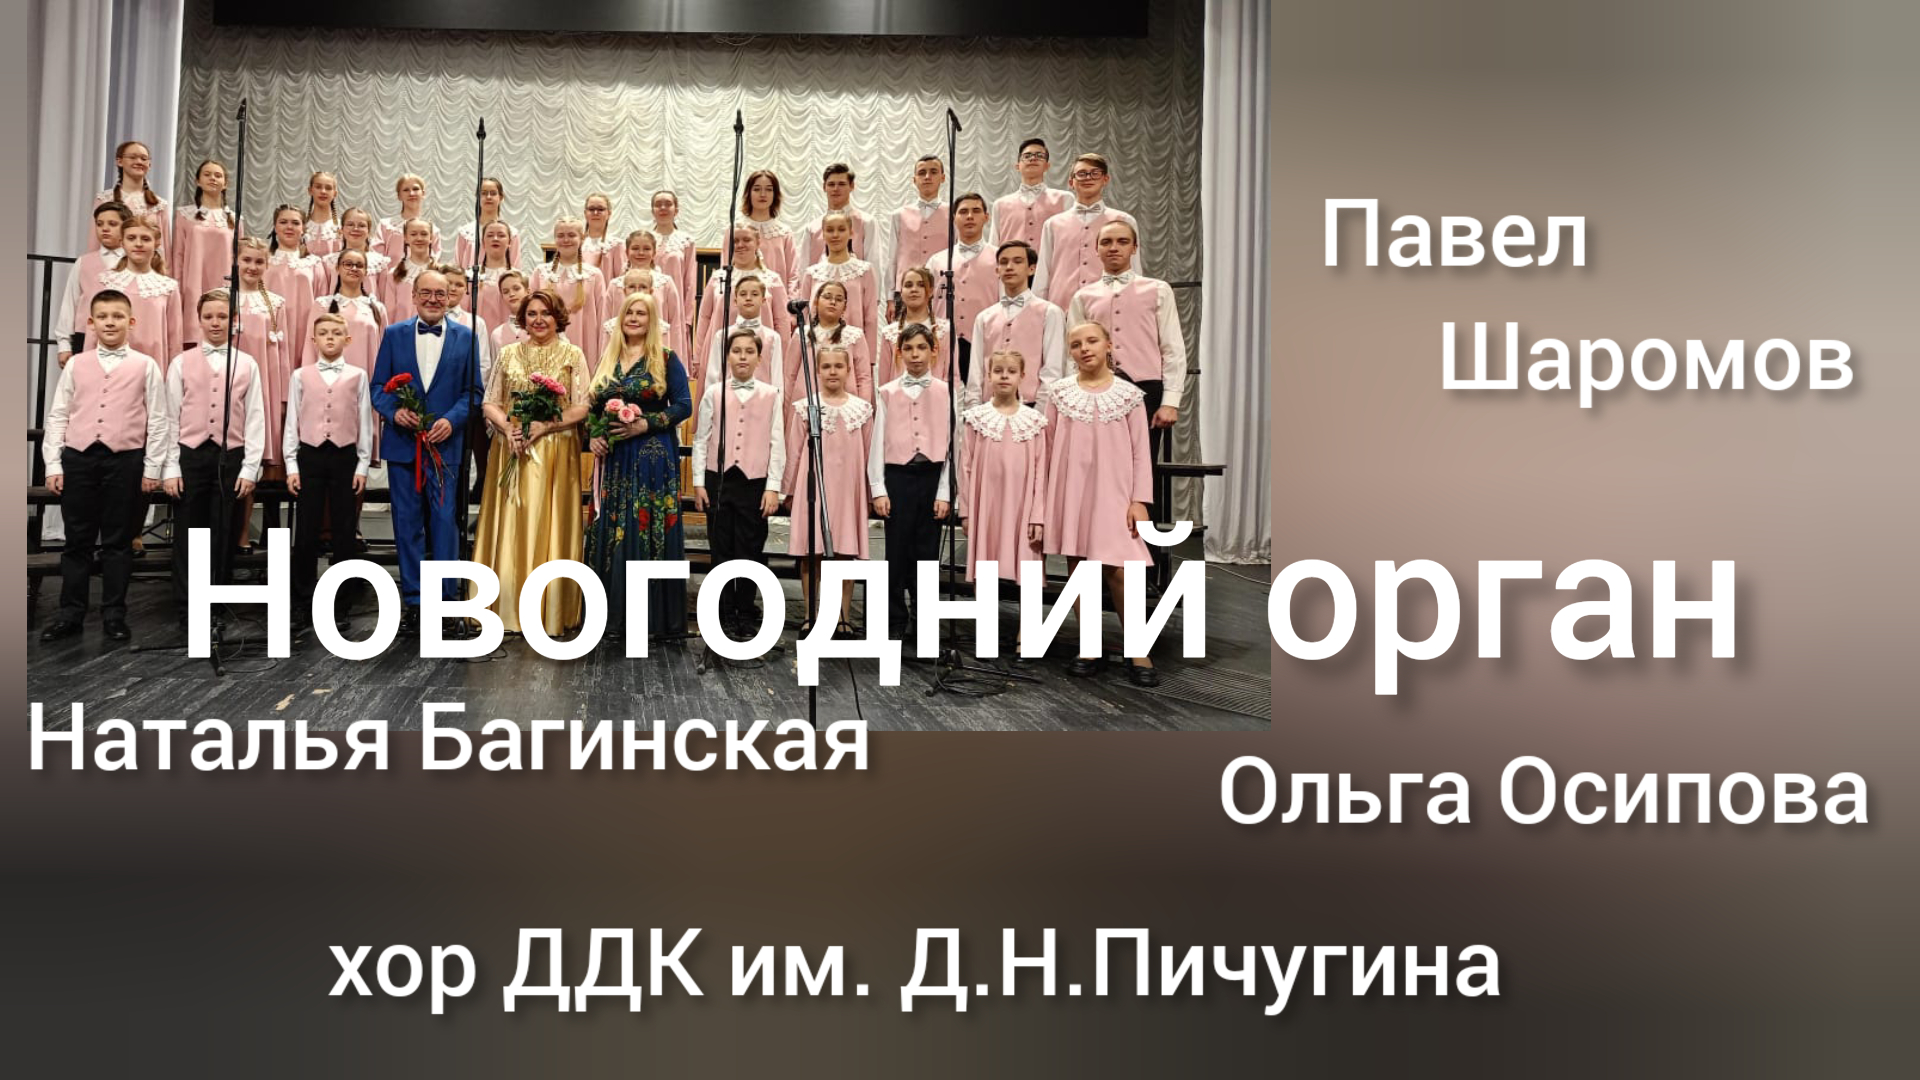 Выступление сводного хора "Дружба" ДДК им.Пичугина в Новосибирской филармонии.